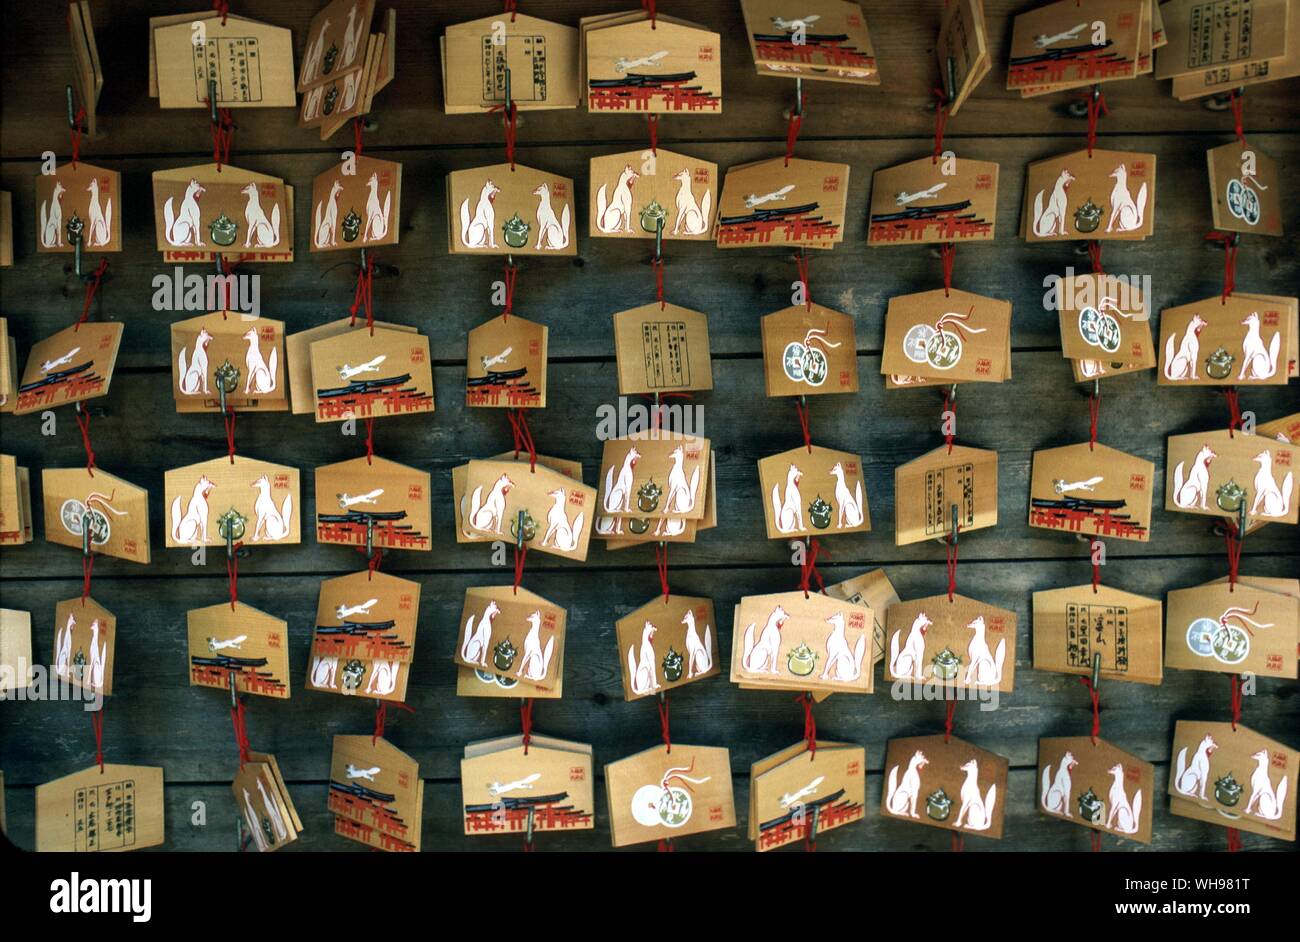 Fox ema am Fushimi Inari in Kyoto. Der Brauch des schreiben Wünsche auf der Rückseite des Holz- bilder aus der Tradition des Spendens Pferde an wallfahrtsorten entwickelt. Menschen, die es sich nicht leisten könnten, echten Pferde Ihnen skizziert auf ein Stück Holz Stockfoto